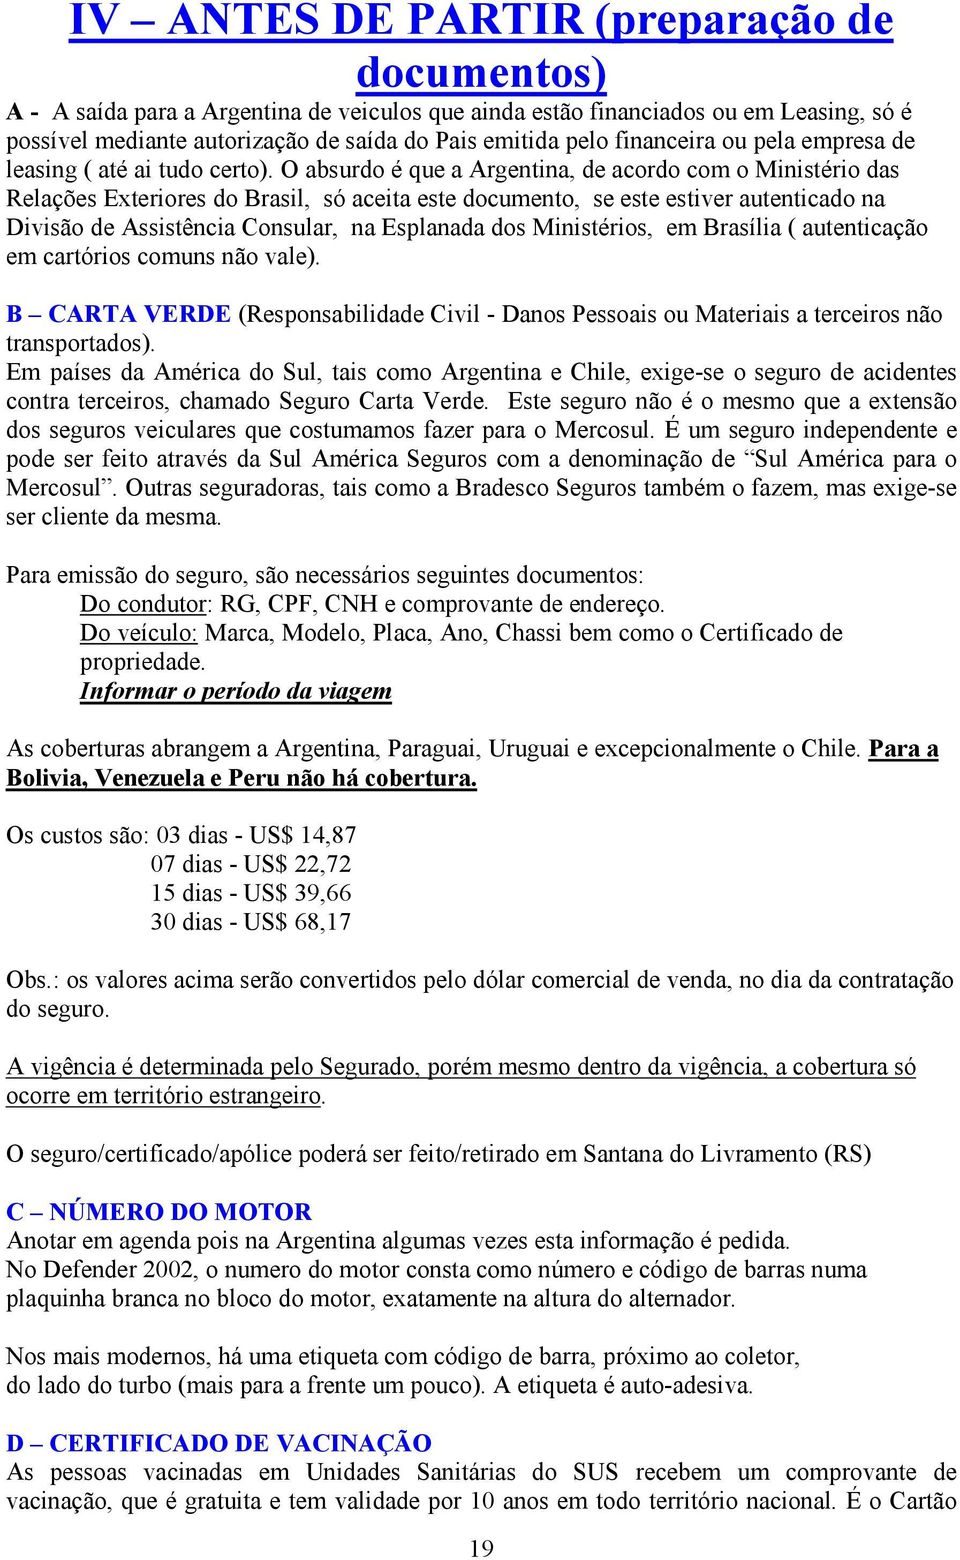 O absurdo é que a Argentina, de acordo com o Ministério das Relações Exteriores do Brasil, só aceita este documento, se este estiver autenticado na Divisão de Assistência Consular, na Esplanada dos